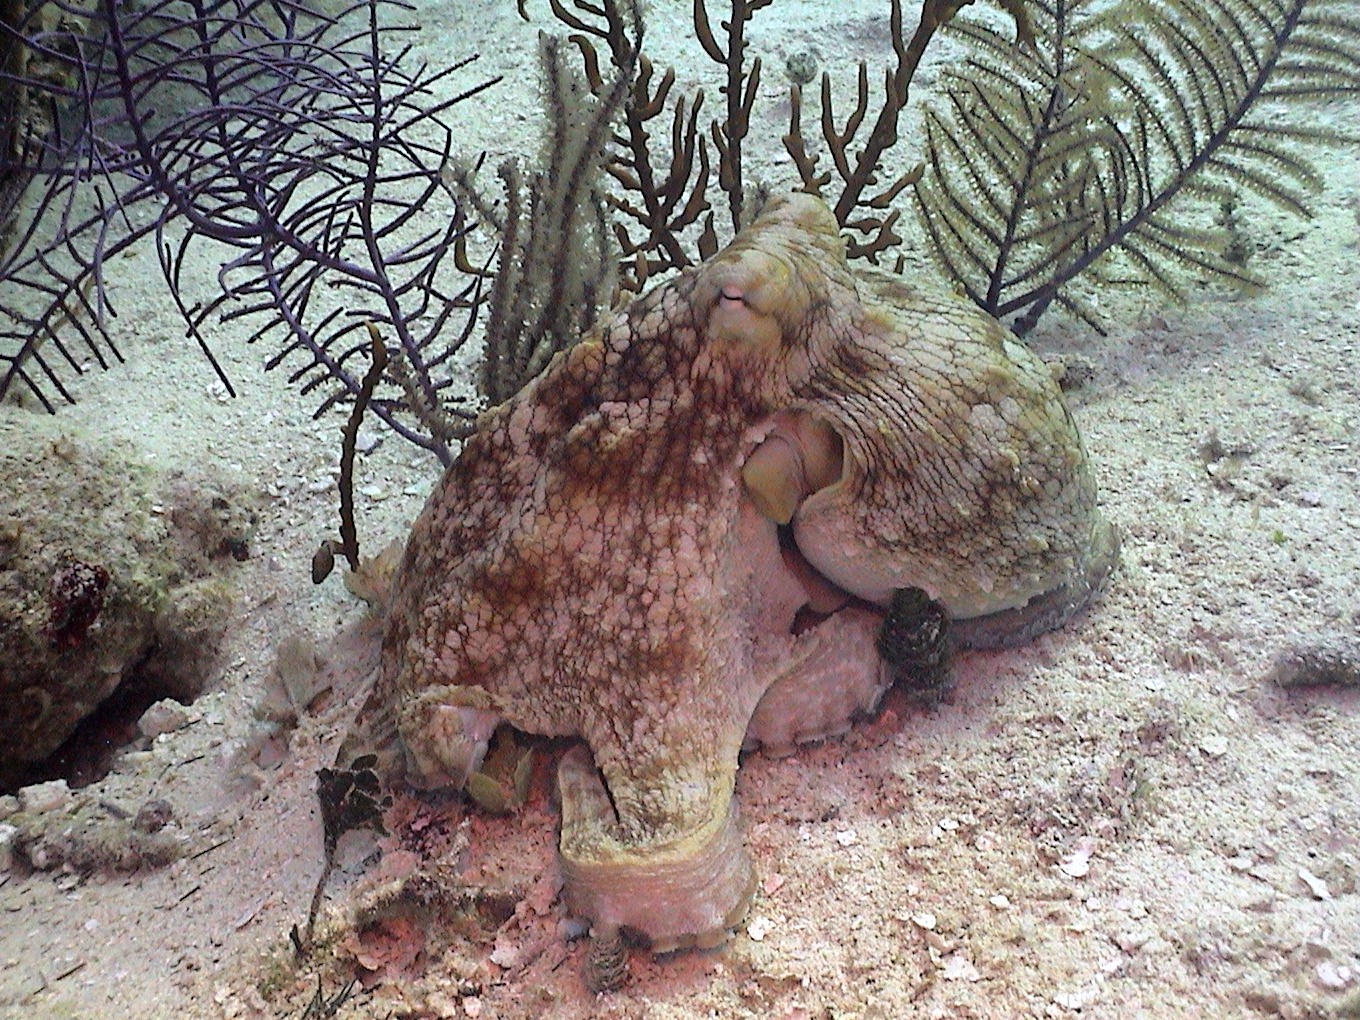 Octopus in Belize